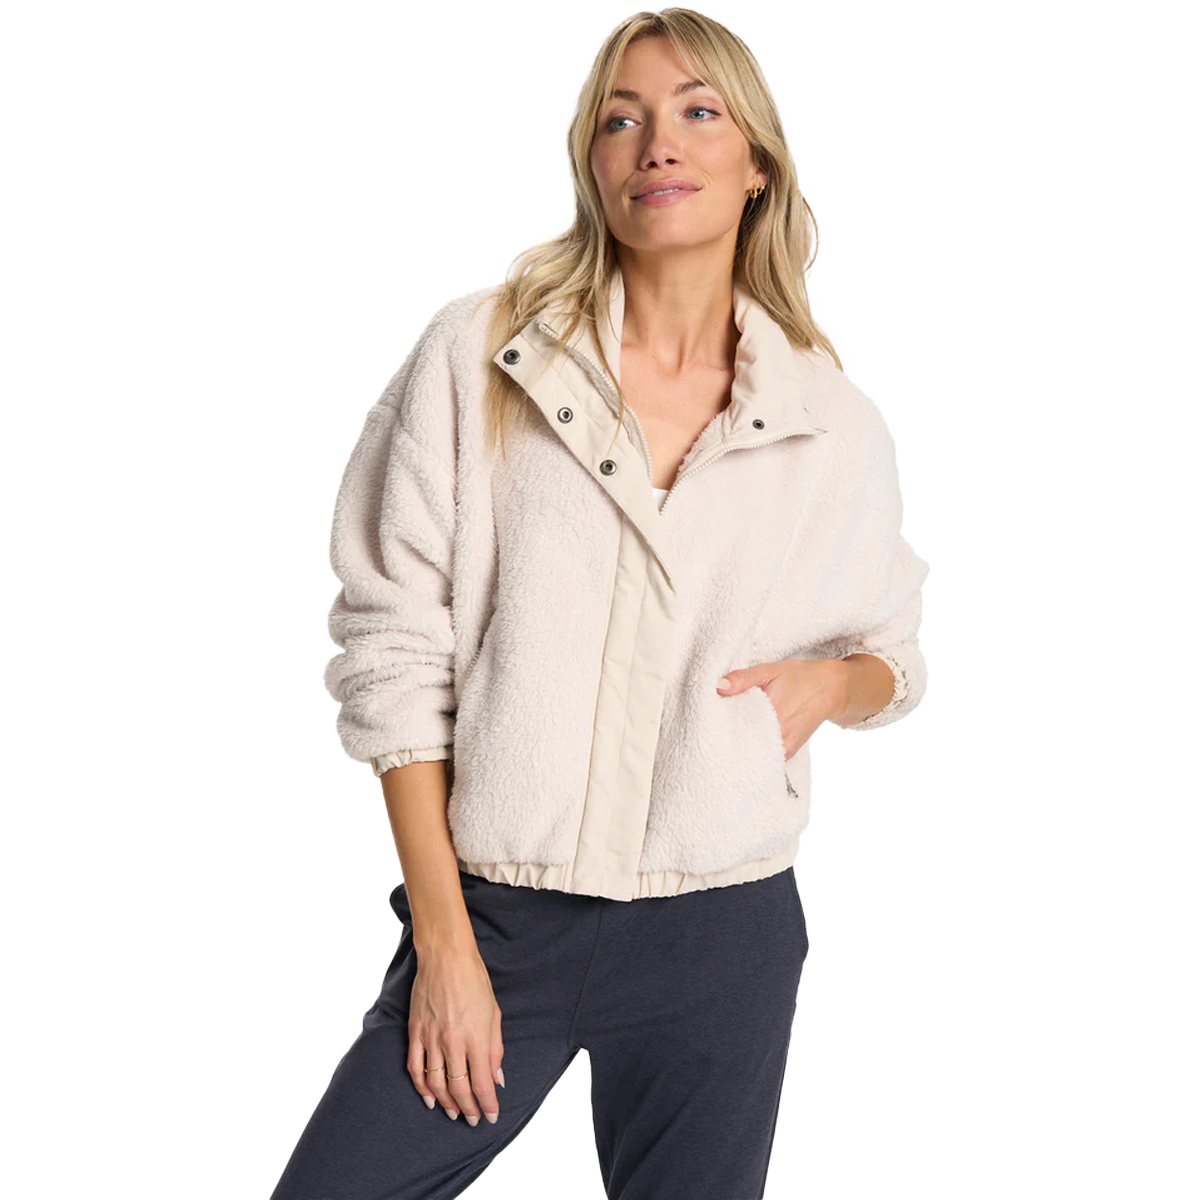 Stylish Women's Sherpa Fleece Jacket Faux Fuzzy Long Sleeve Casual Zip Up  Bomber Jackets Coat Outwear with Zip Pocket - Walmart.com